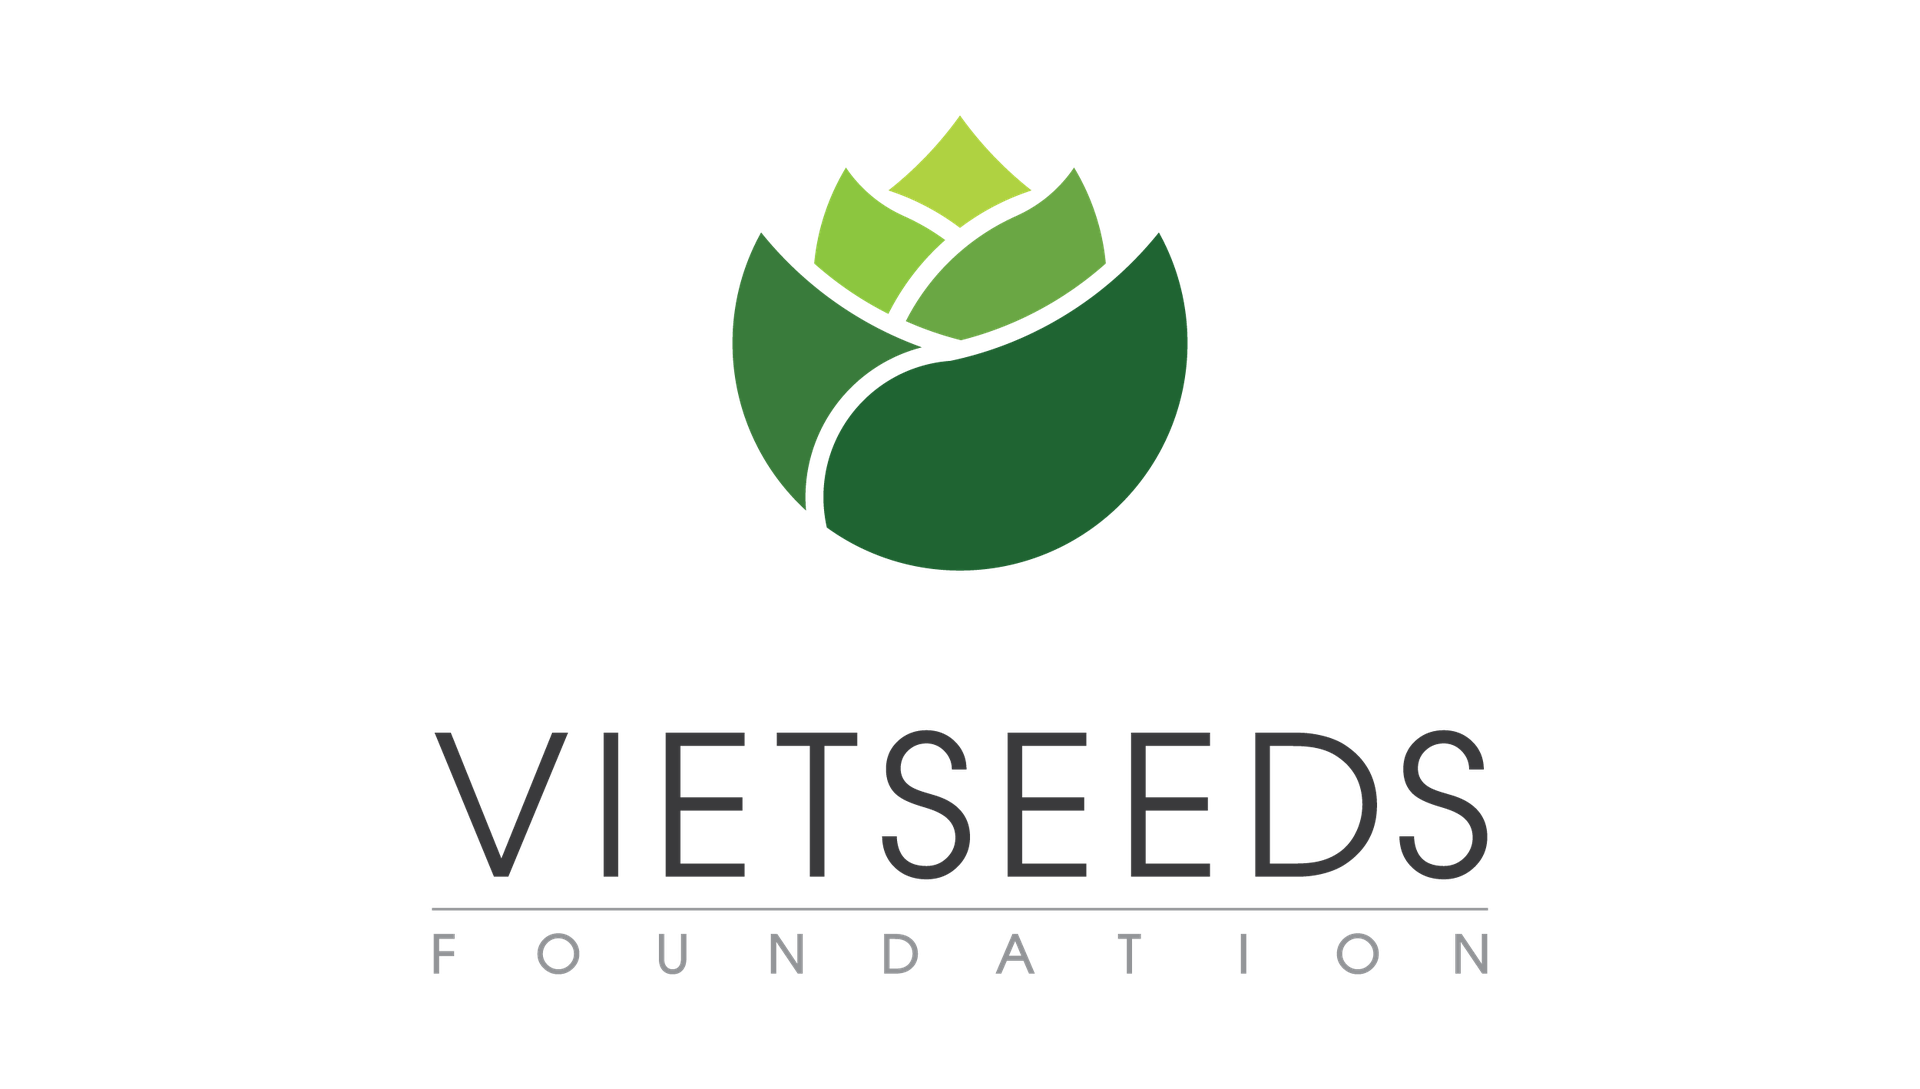 VietSeeds Mentoring Program 2020-2021: Kết thúc giai đoạn 2 - Gặp gỡ trao đổi